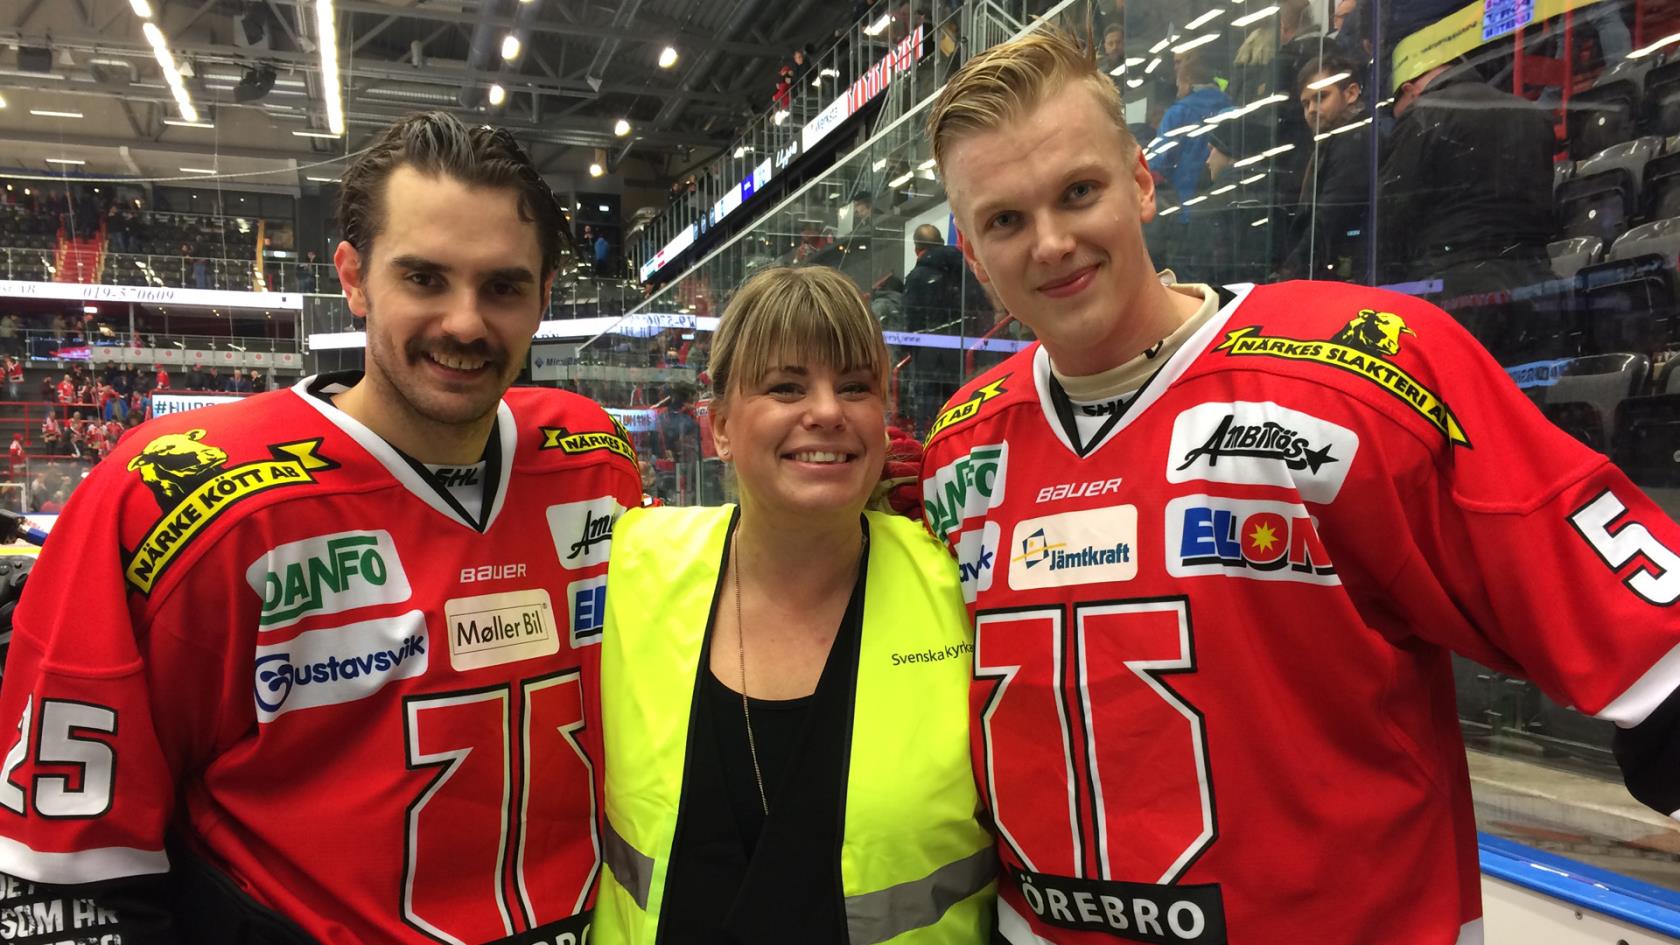 Martin Johansson och Gustav Backström från Örebro Hockey tillsammans med Svenska kyrkans Therese Blixt!